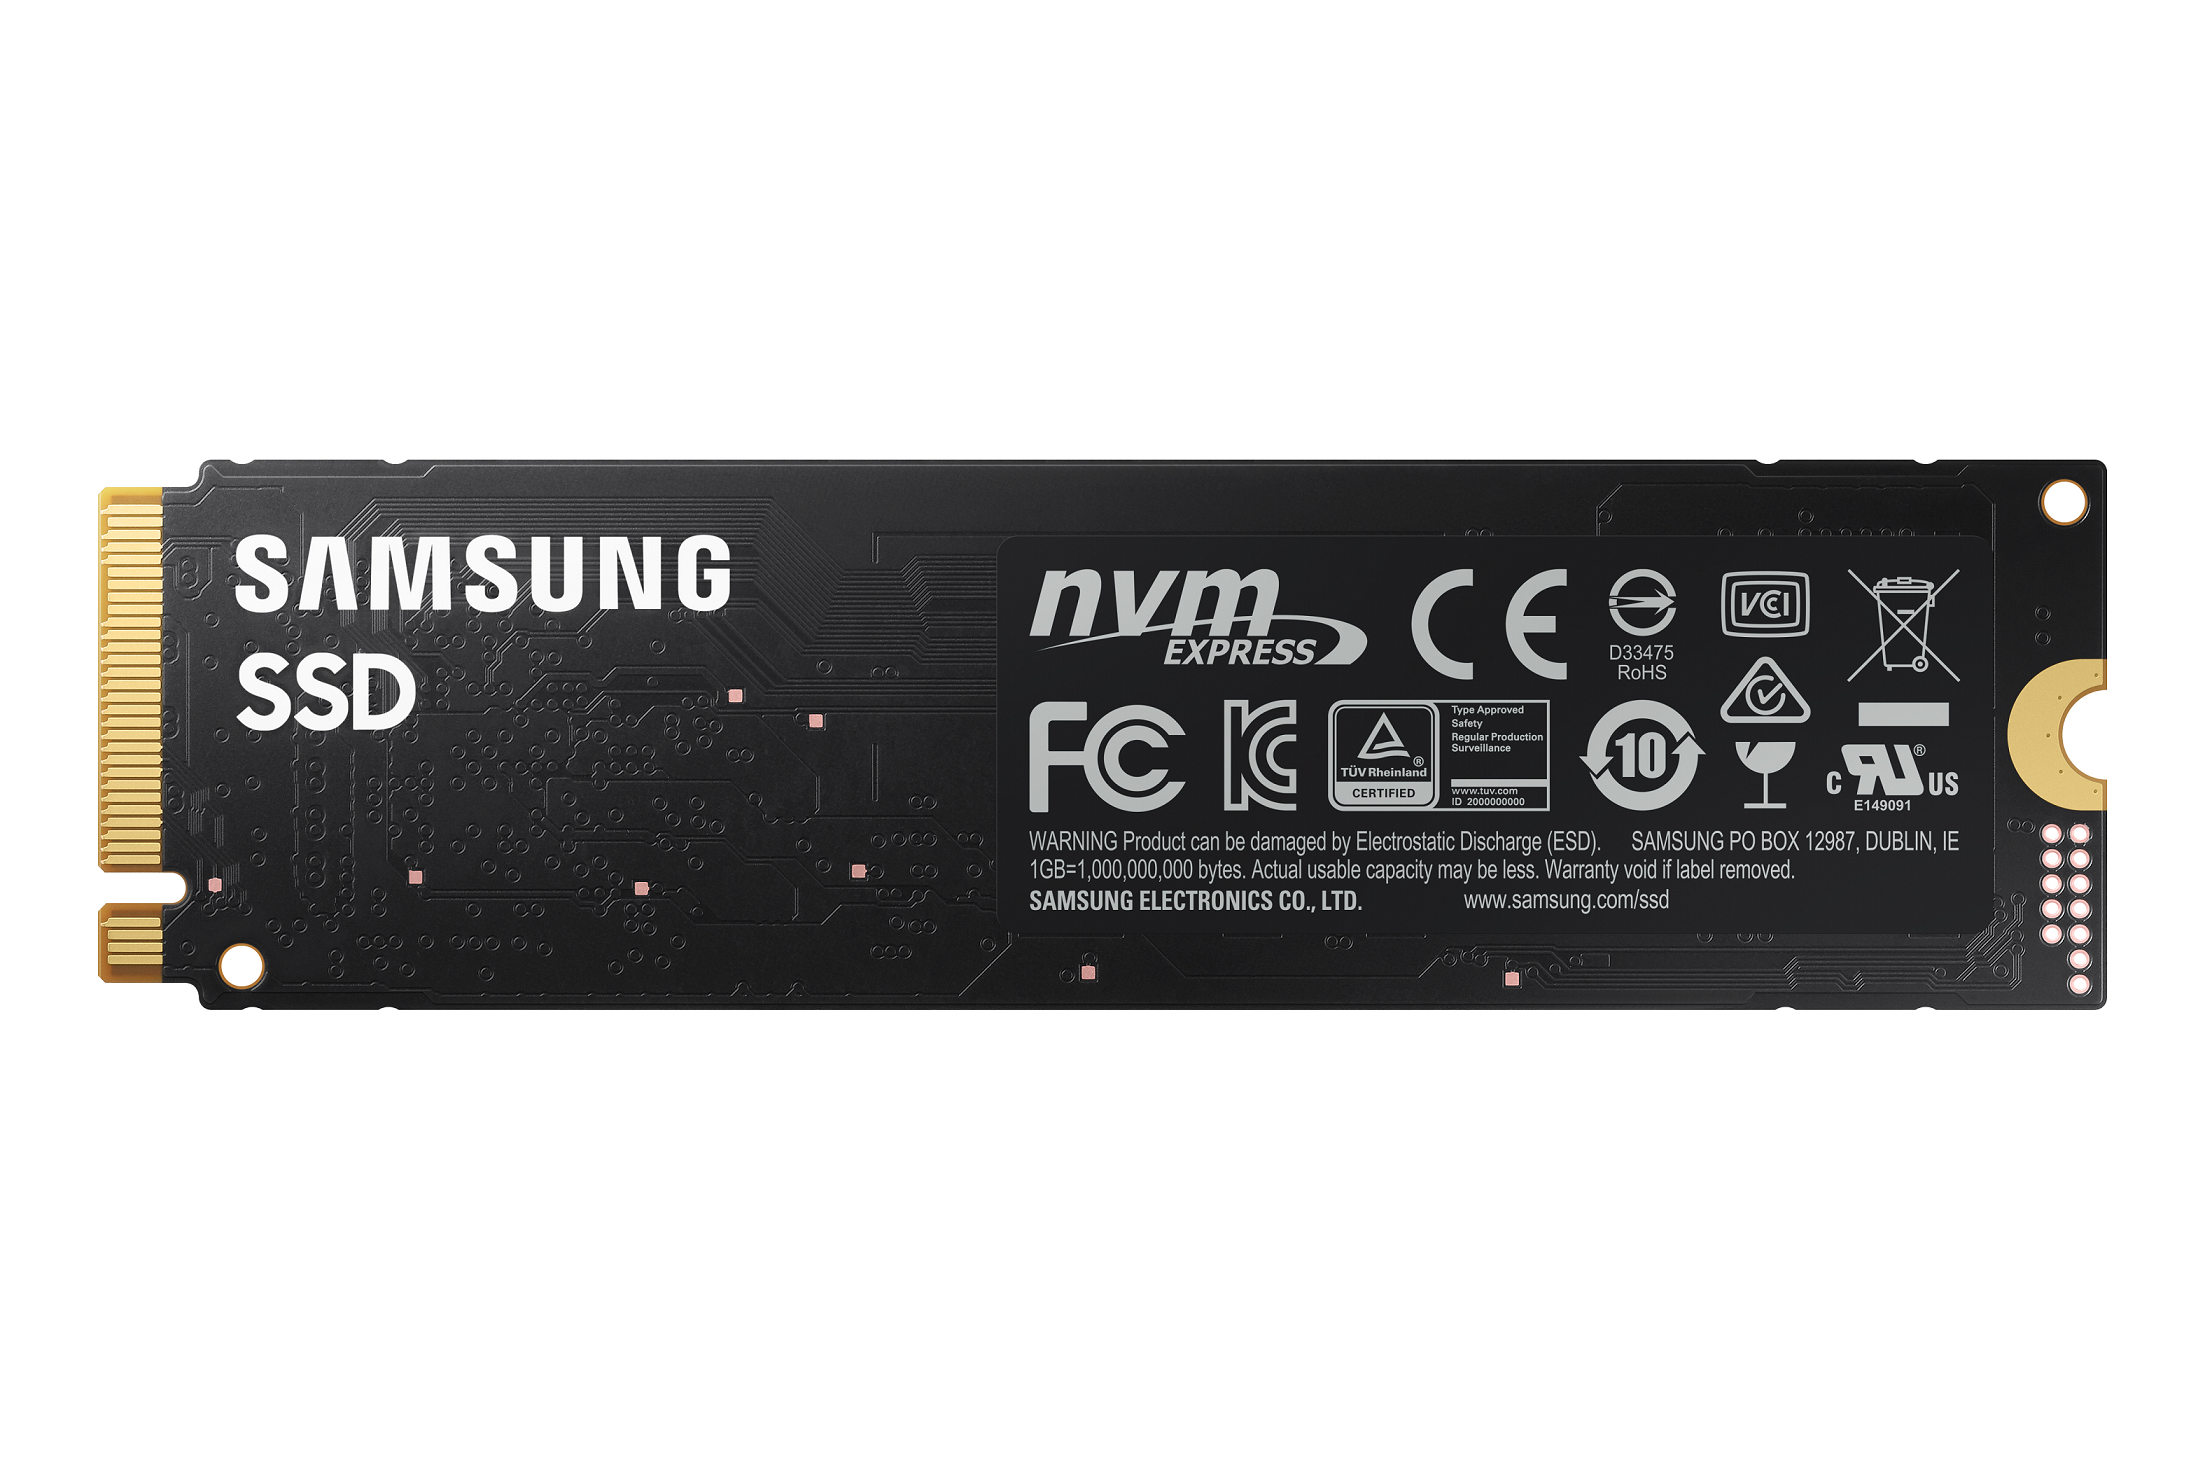 Samsung SSD 980, 500 GB, NVMe M.2 (MZ-V8V500BW)